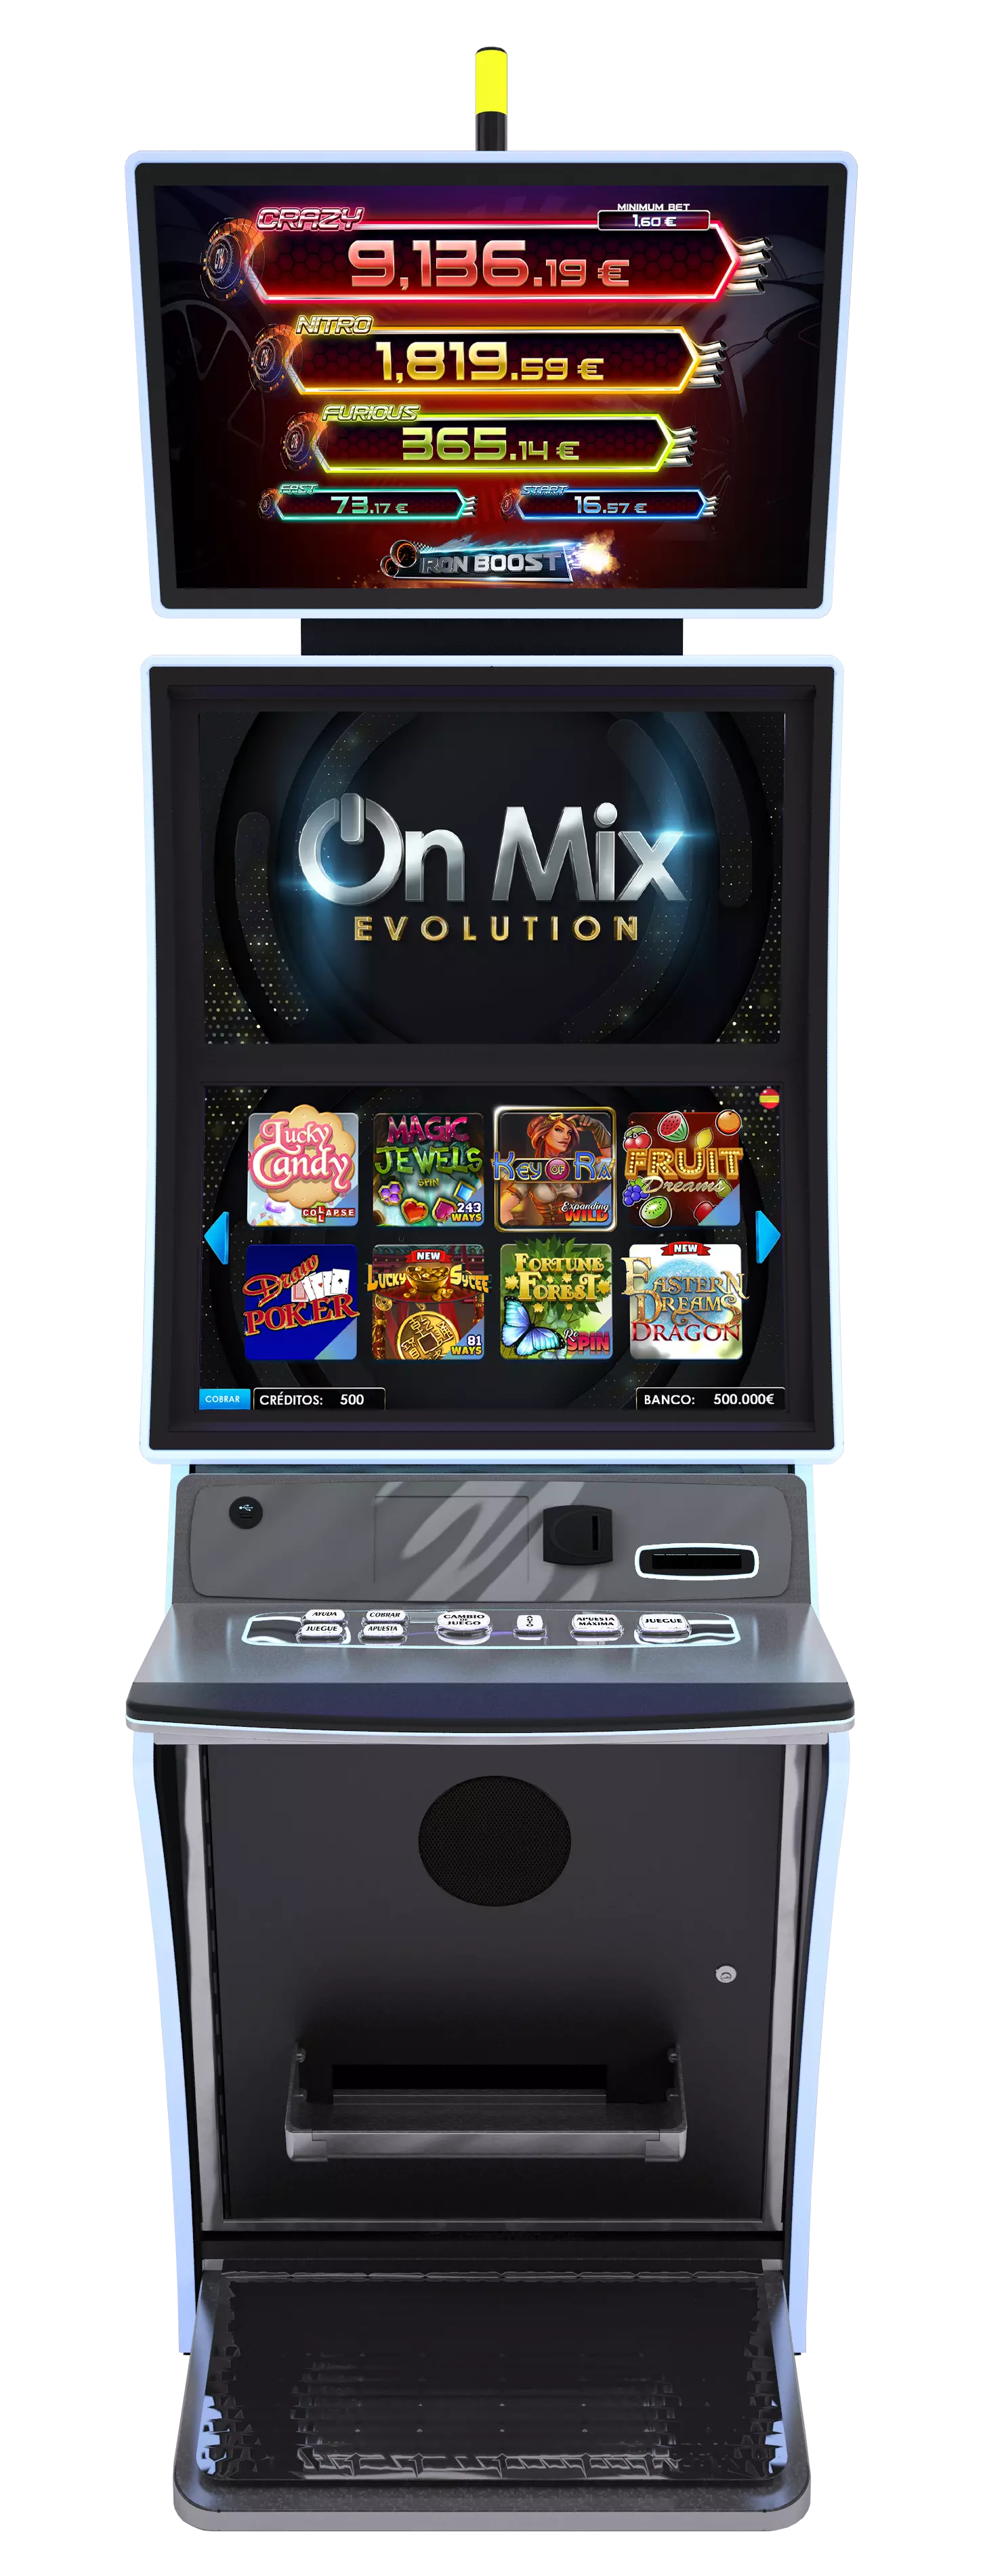 machine-on-mix-evolution-01